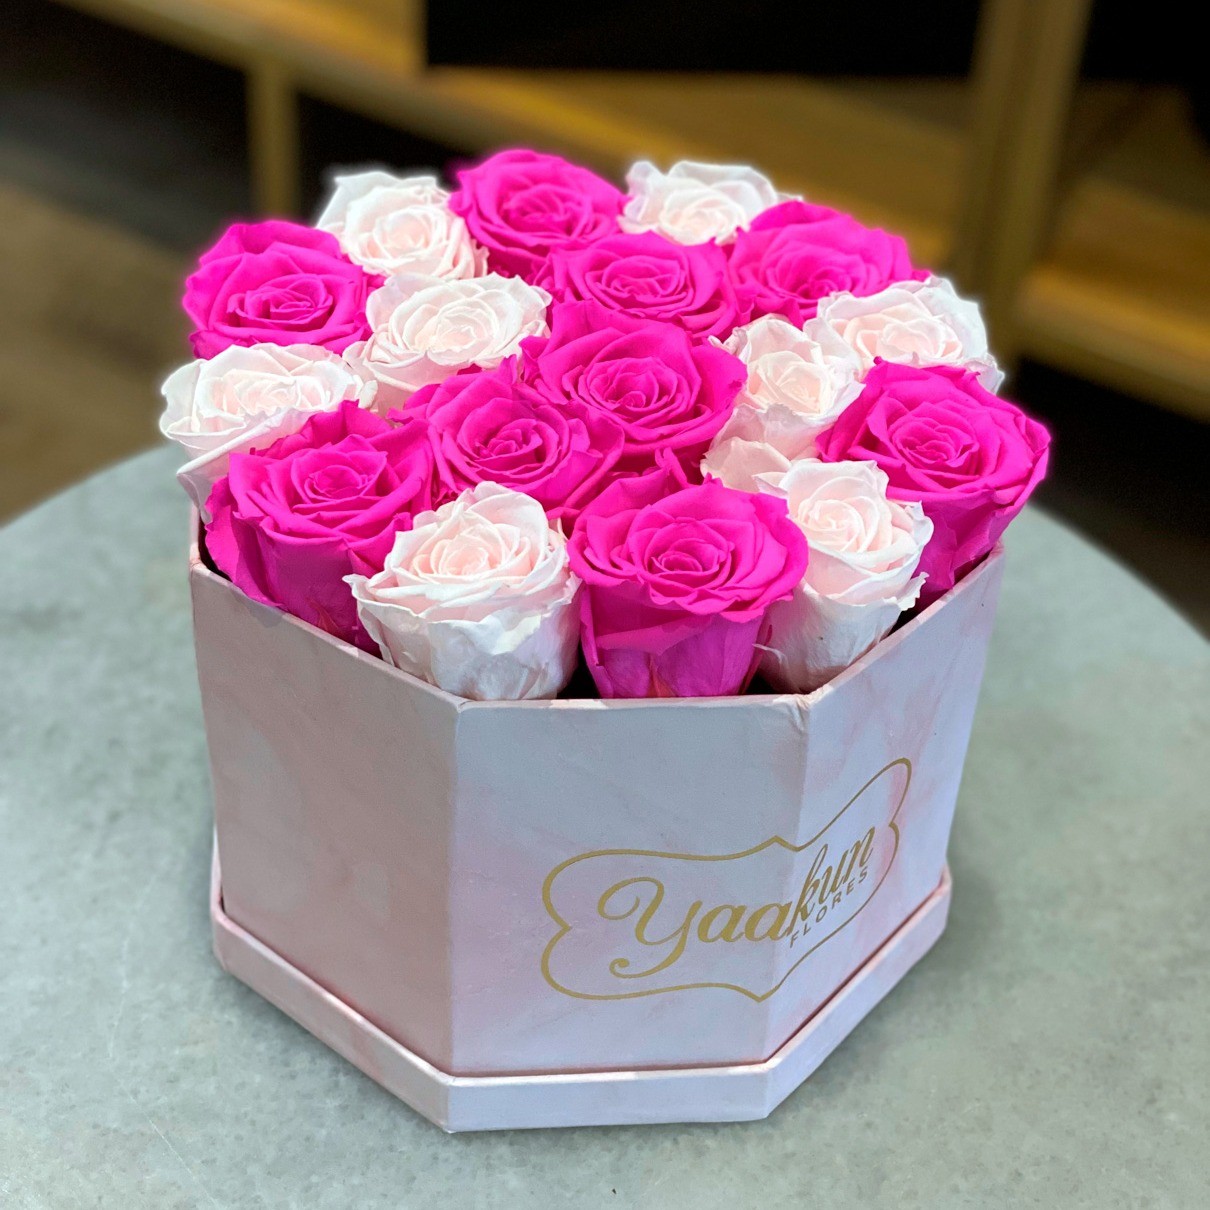 Rosas eternas en caja octagonal pink roses